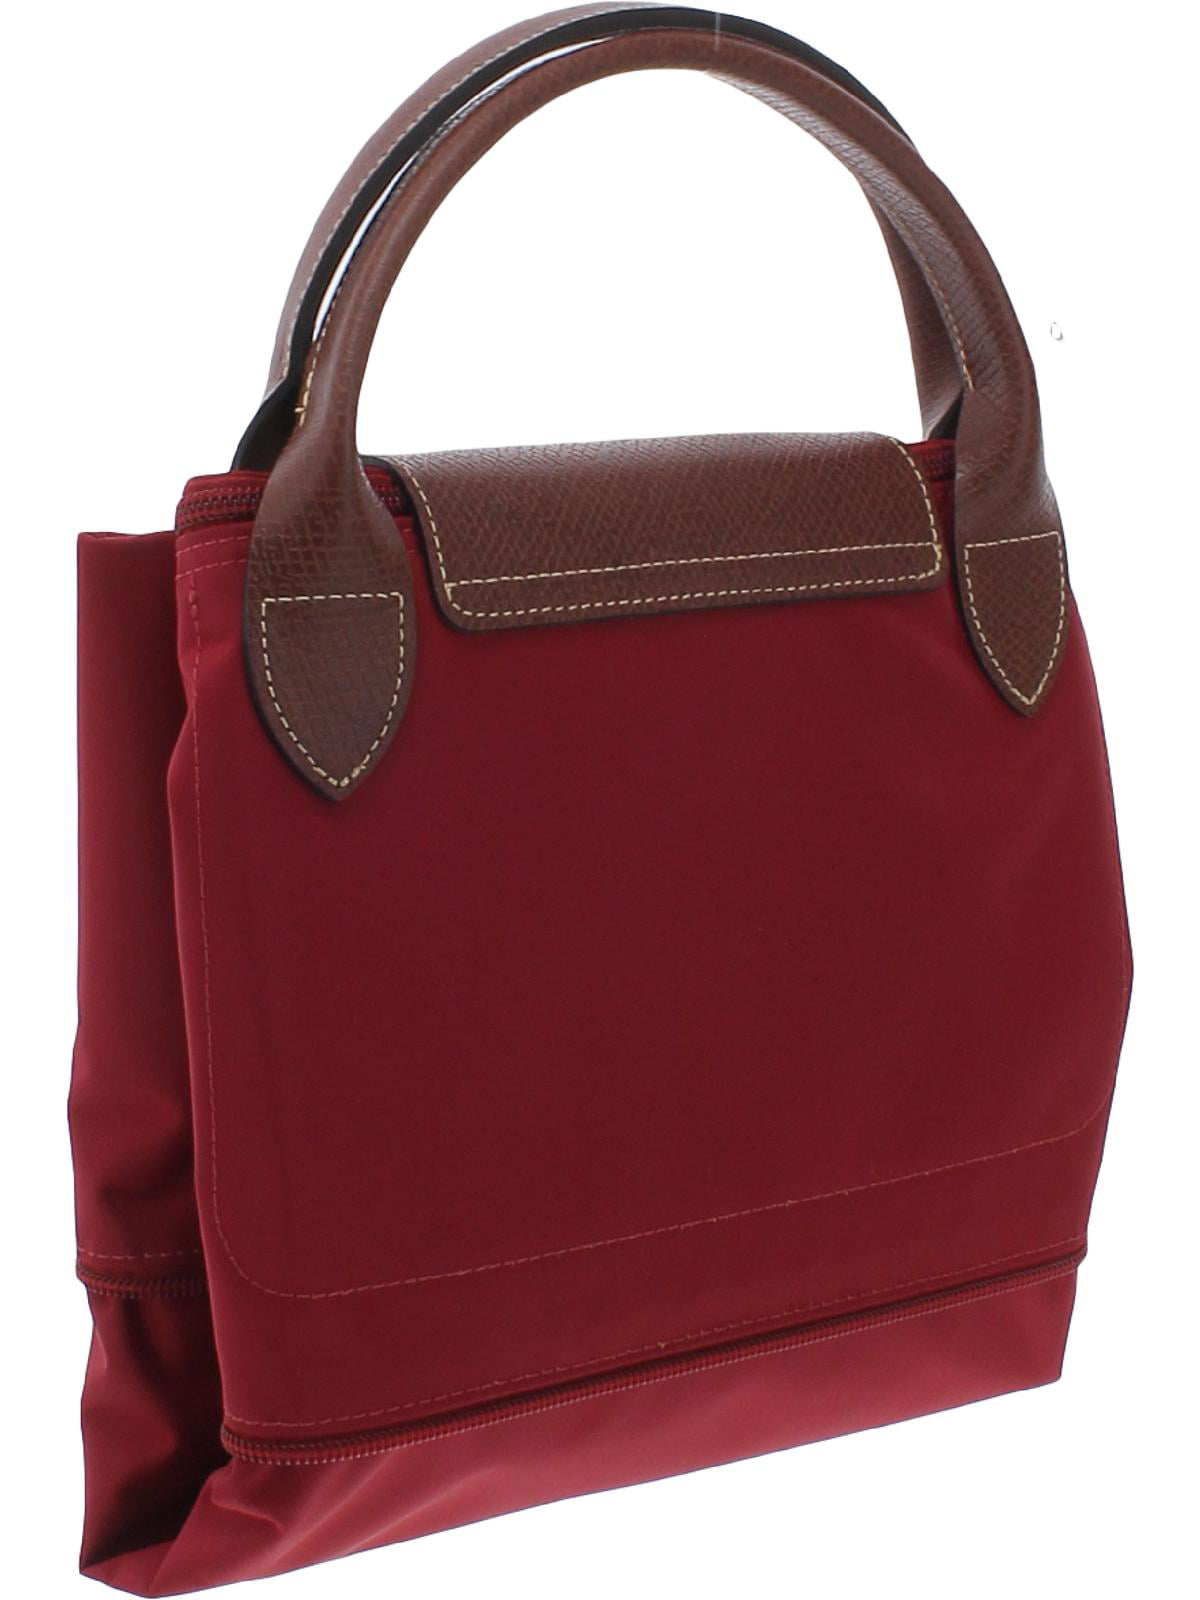 Longchamp Le Pliage Original Travel Bag Large (Red), Women's